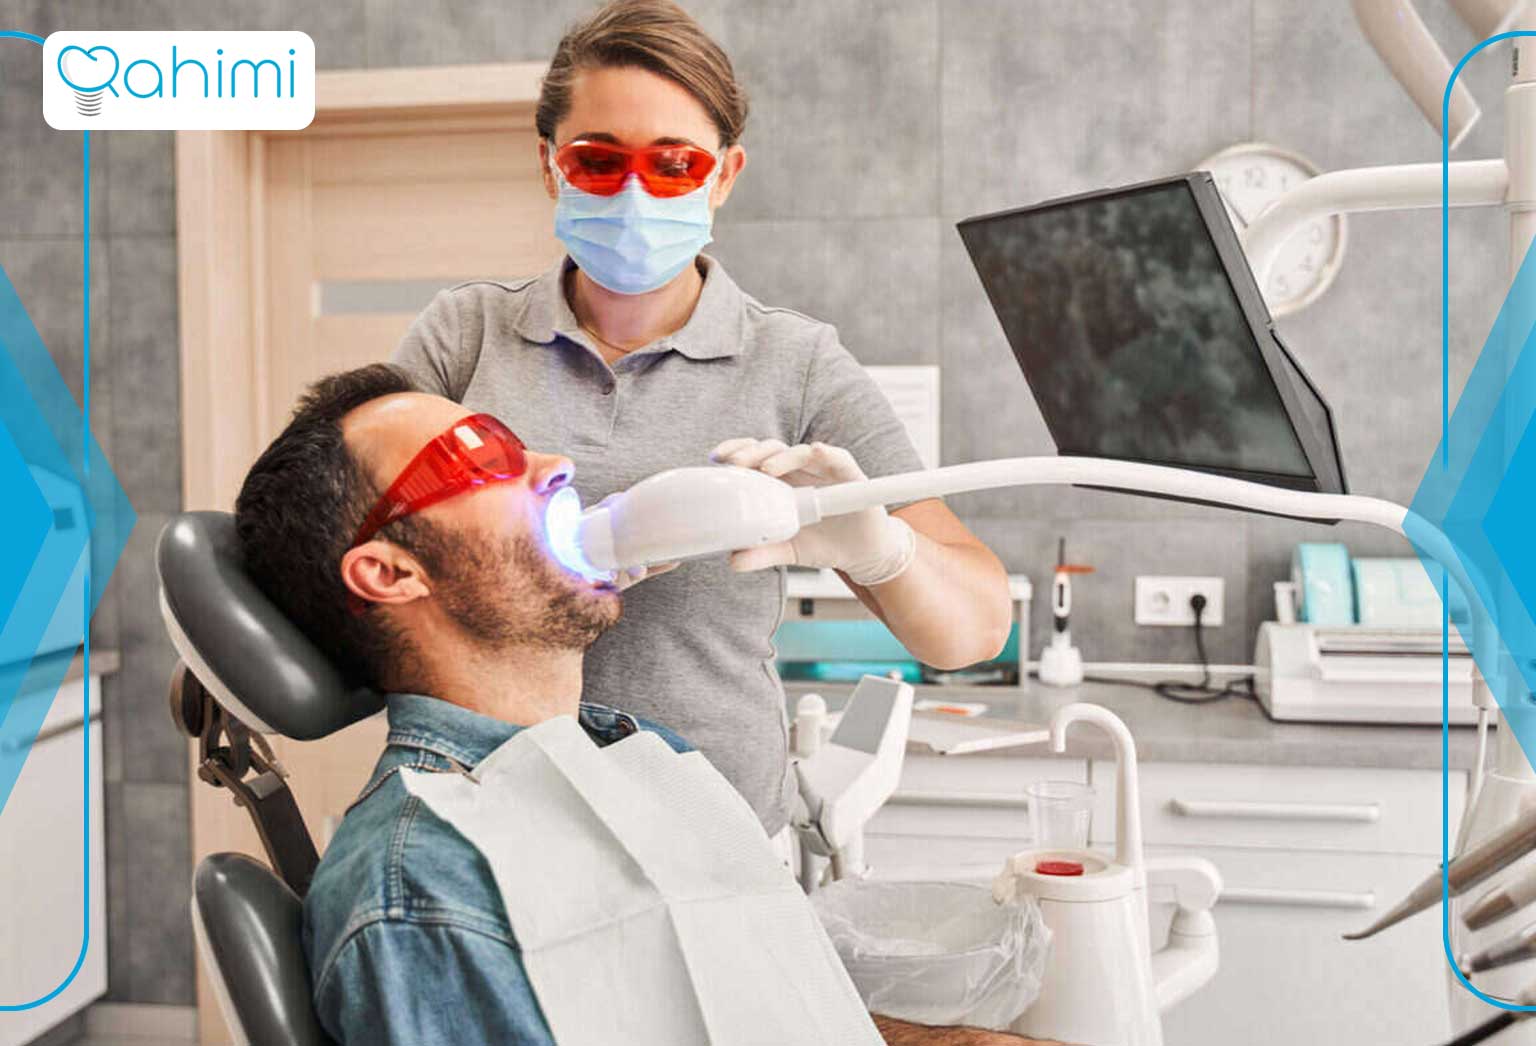 مزایای لیزر دندانپزشکی